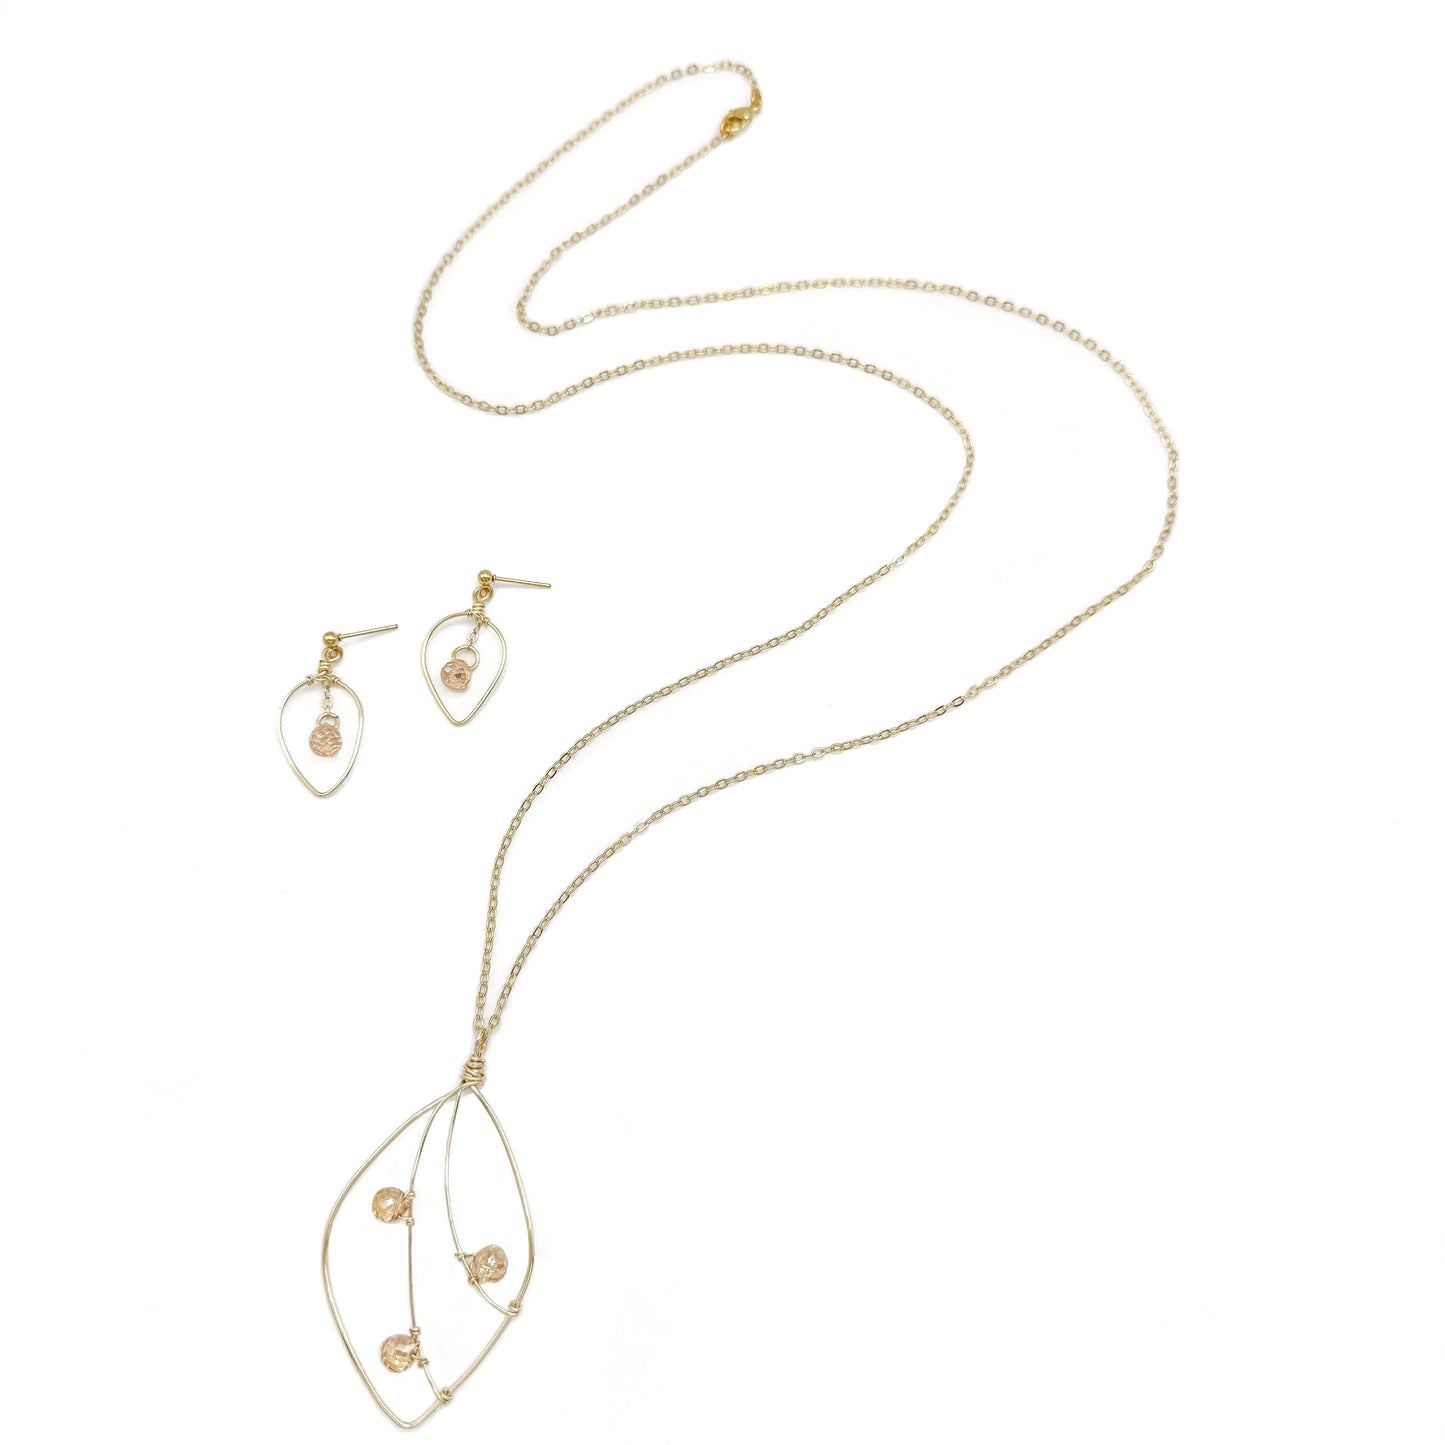 Golden Hour earrings